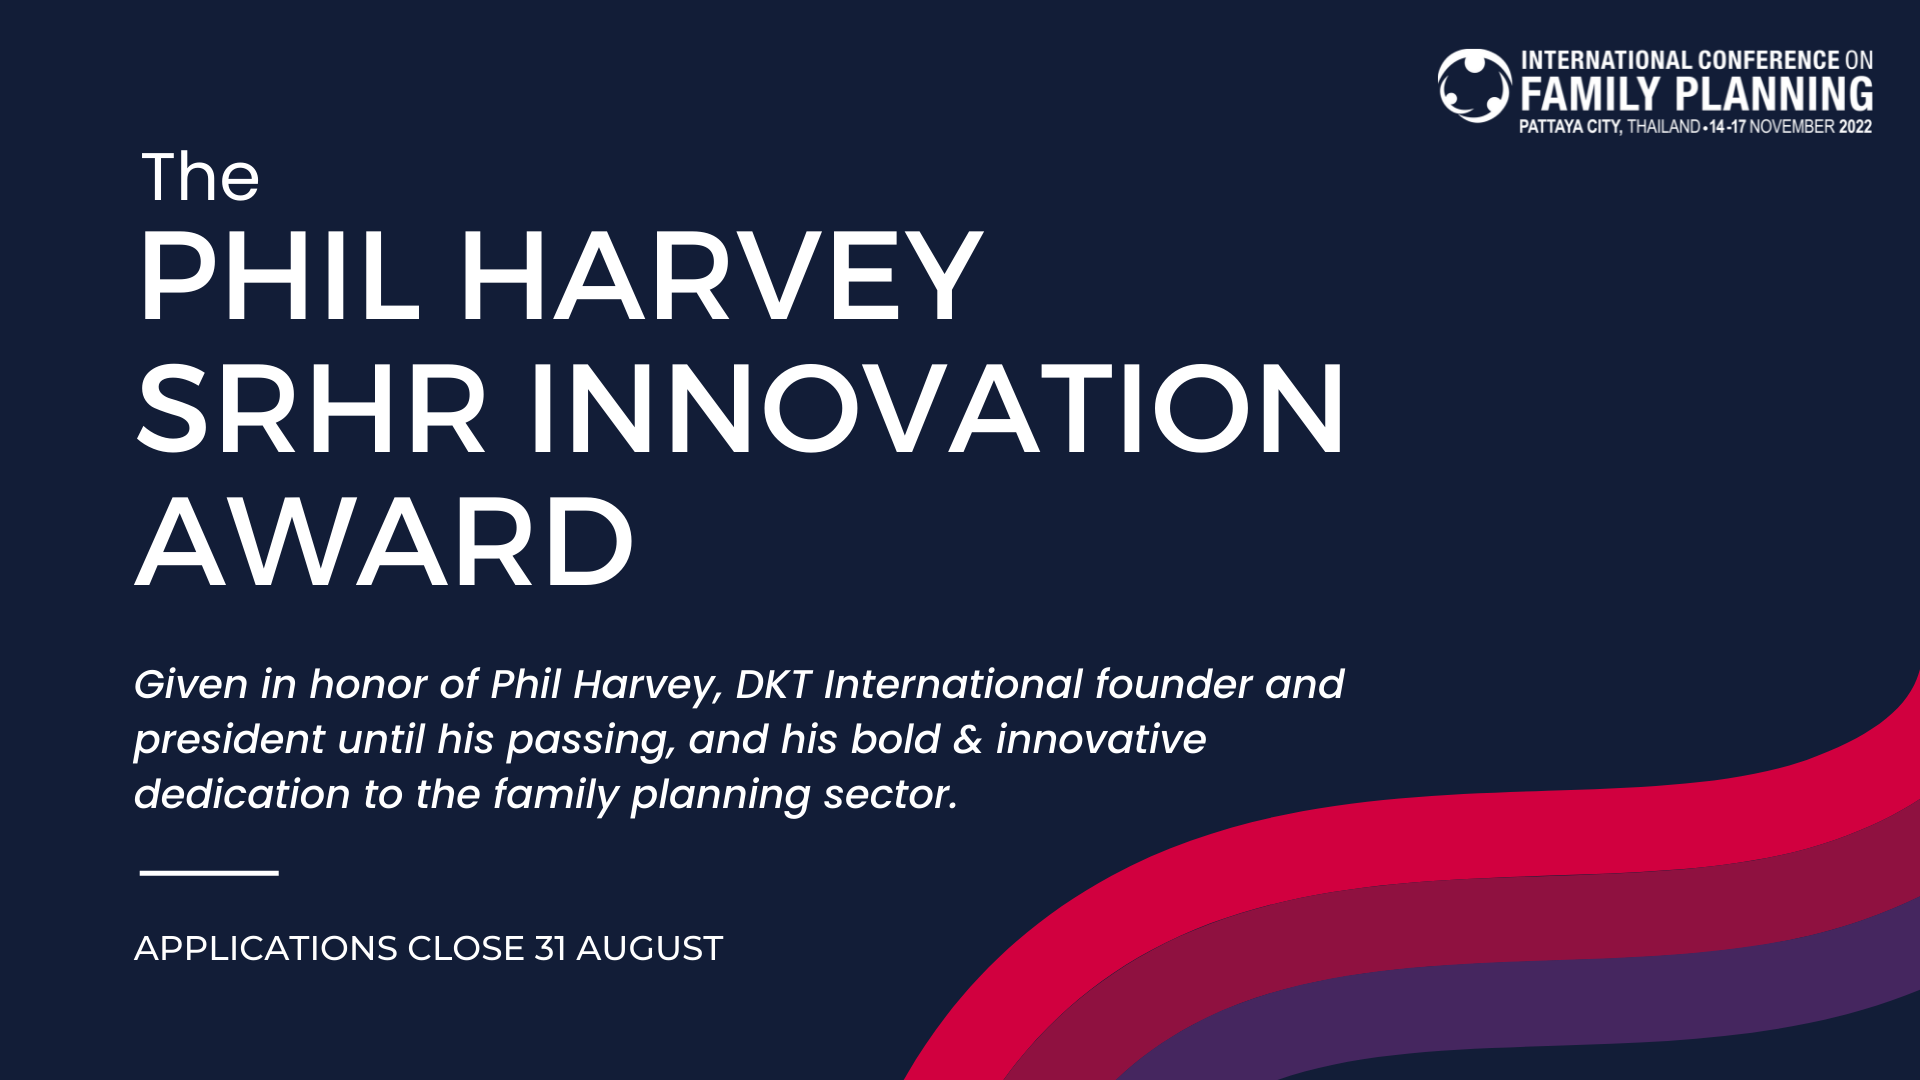 ICFP 2022 Introduces the Phil Harvey SRHR Innovation Award